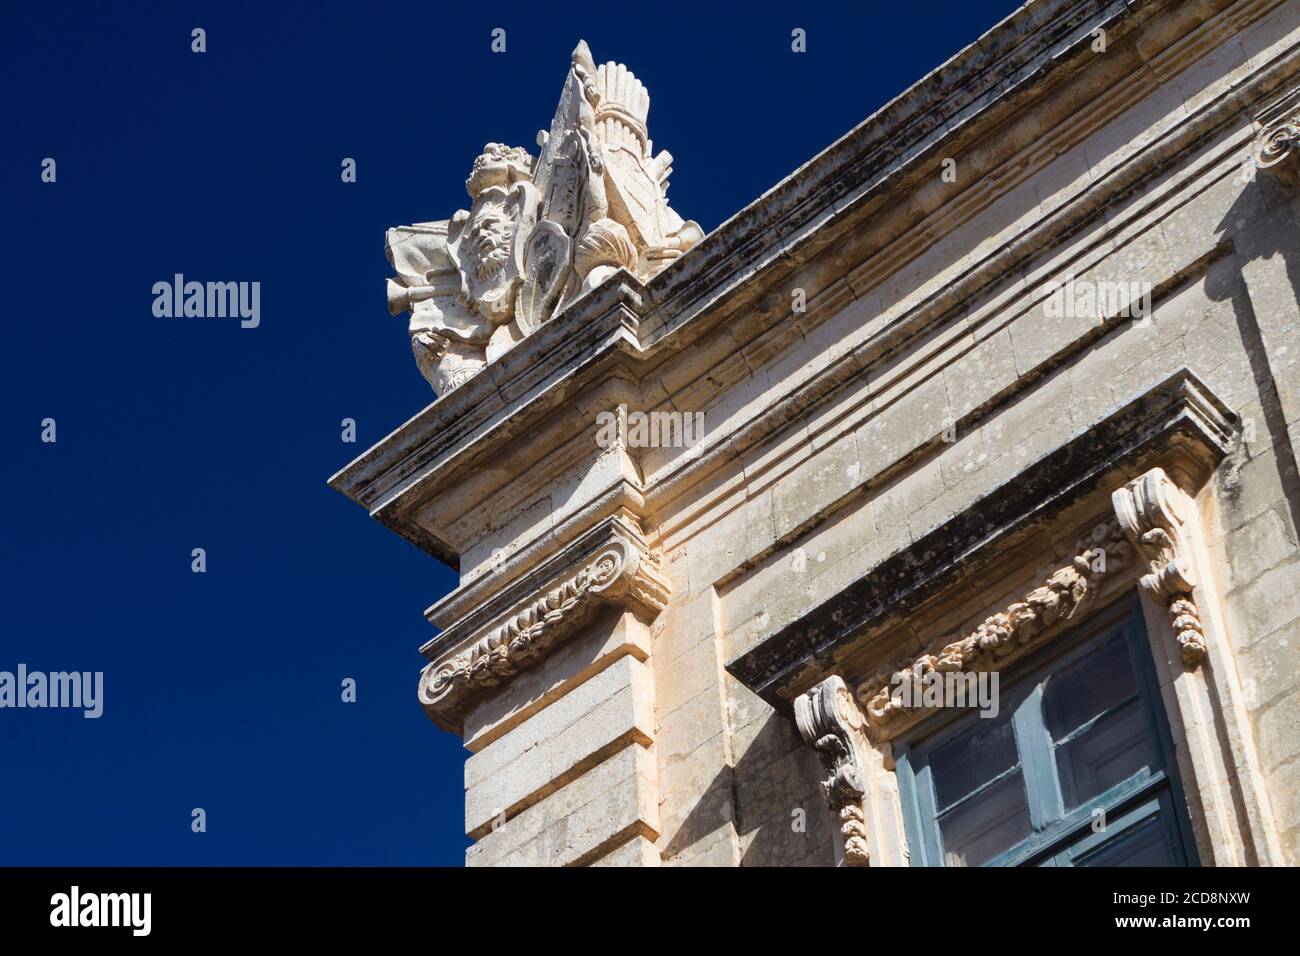 Détails architecturaux de l'ancien bâtiment à Mdina, Malte Banque D'Images